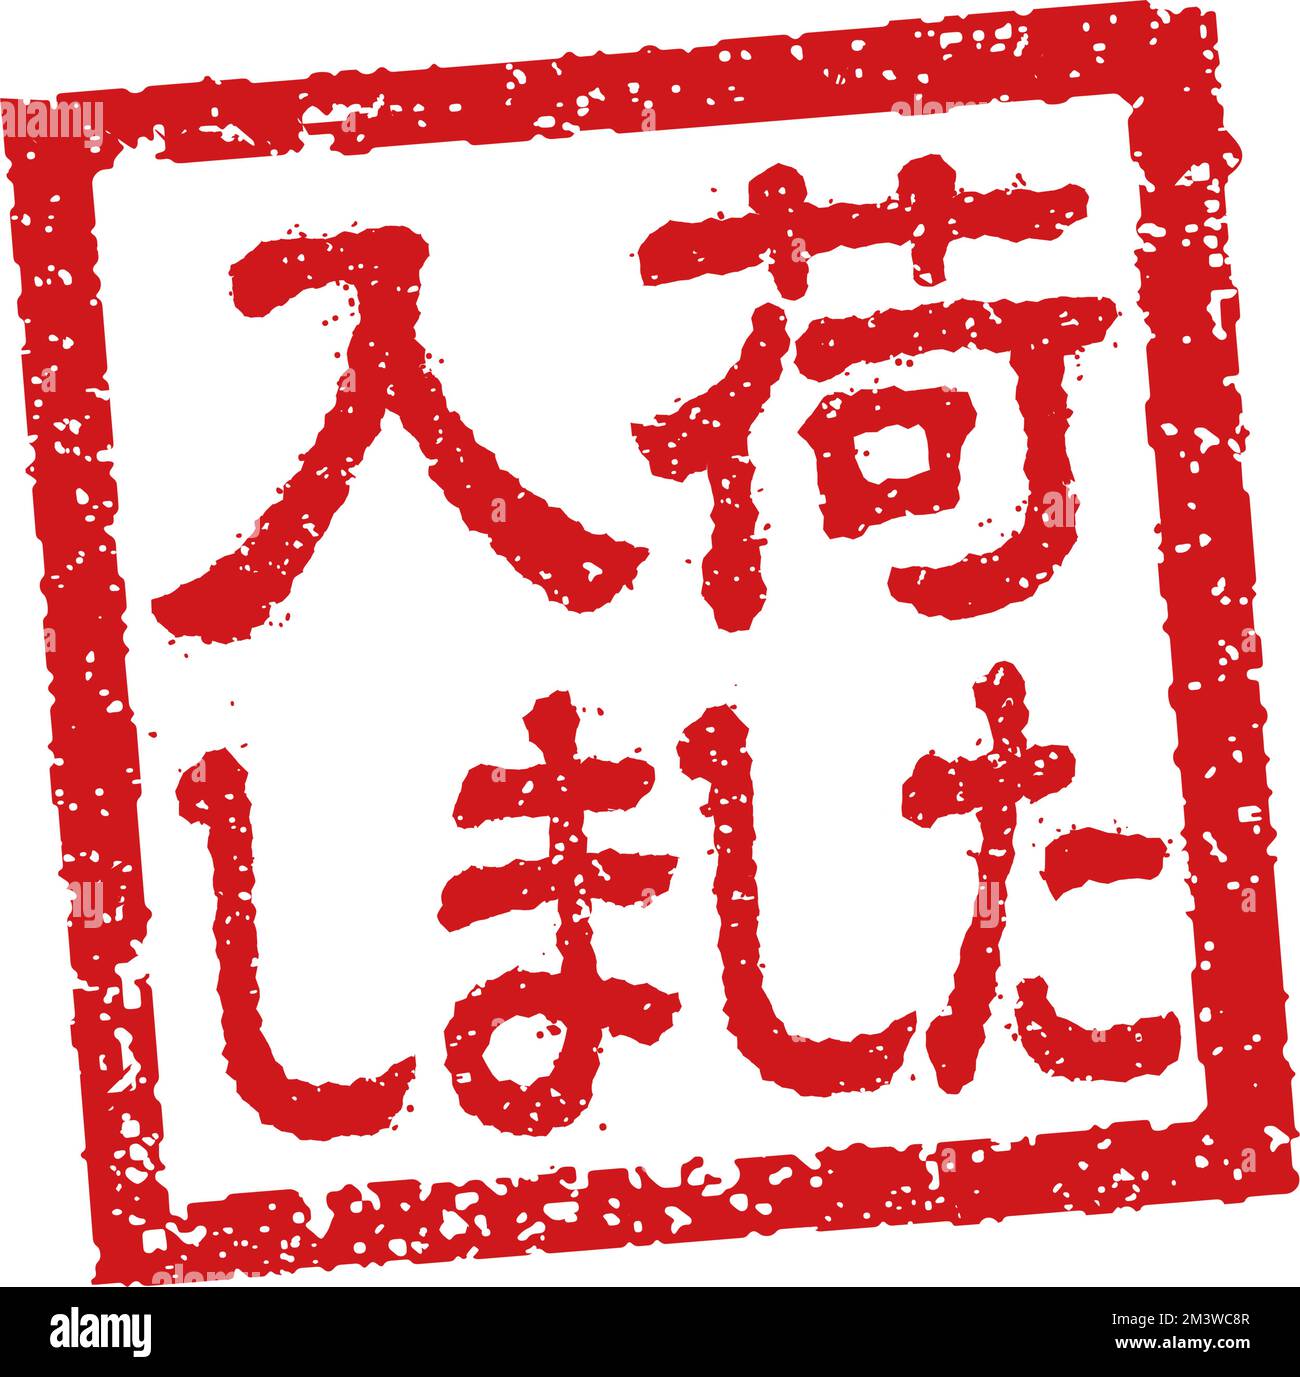 Abbildung von Gummistempeln, die häufig in japanischen Restaurants und Pubs verwendet wird. Usw. | aufgefüllt Stock Vektor